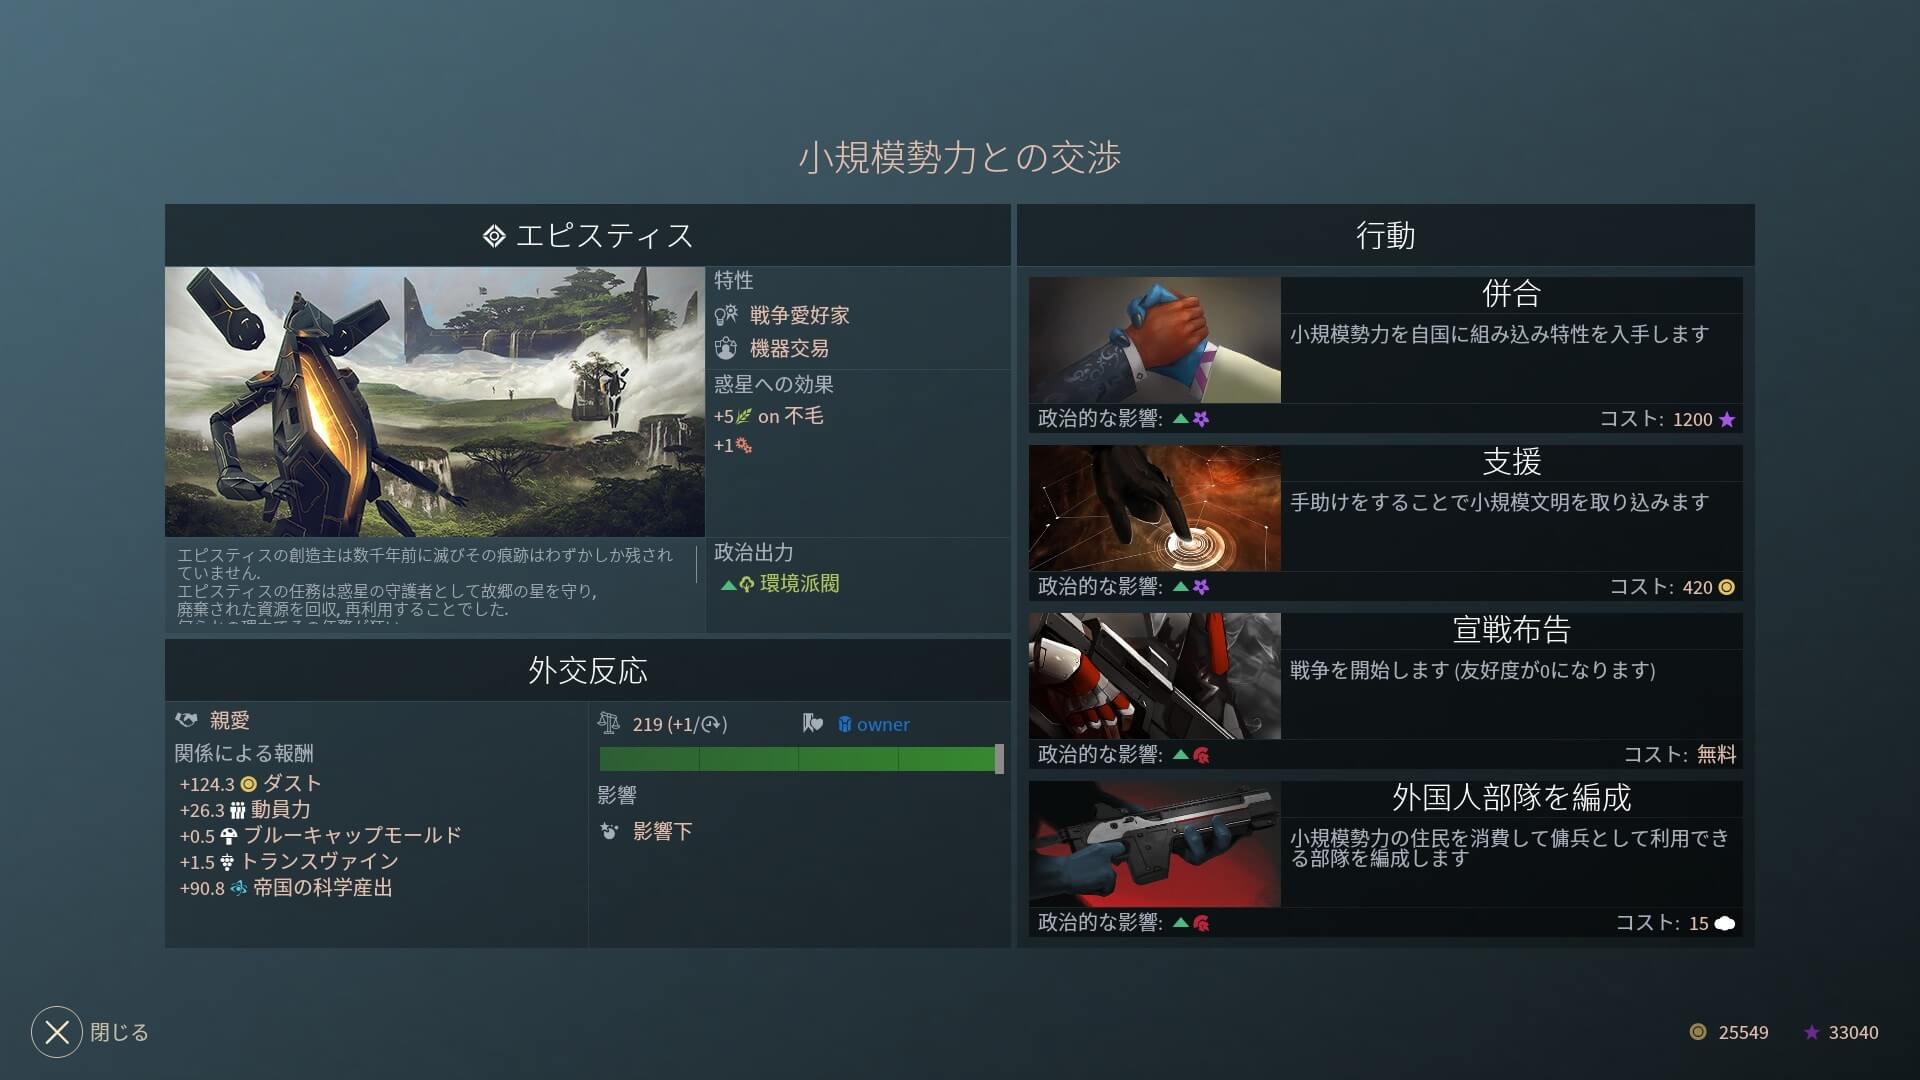 Steam 日本語対応 Pcゲーム Steamおすすめ4xストラテジーゲーム Game Play360